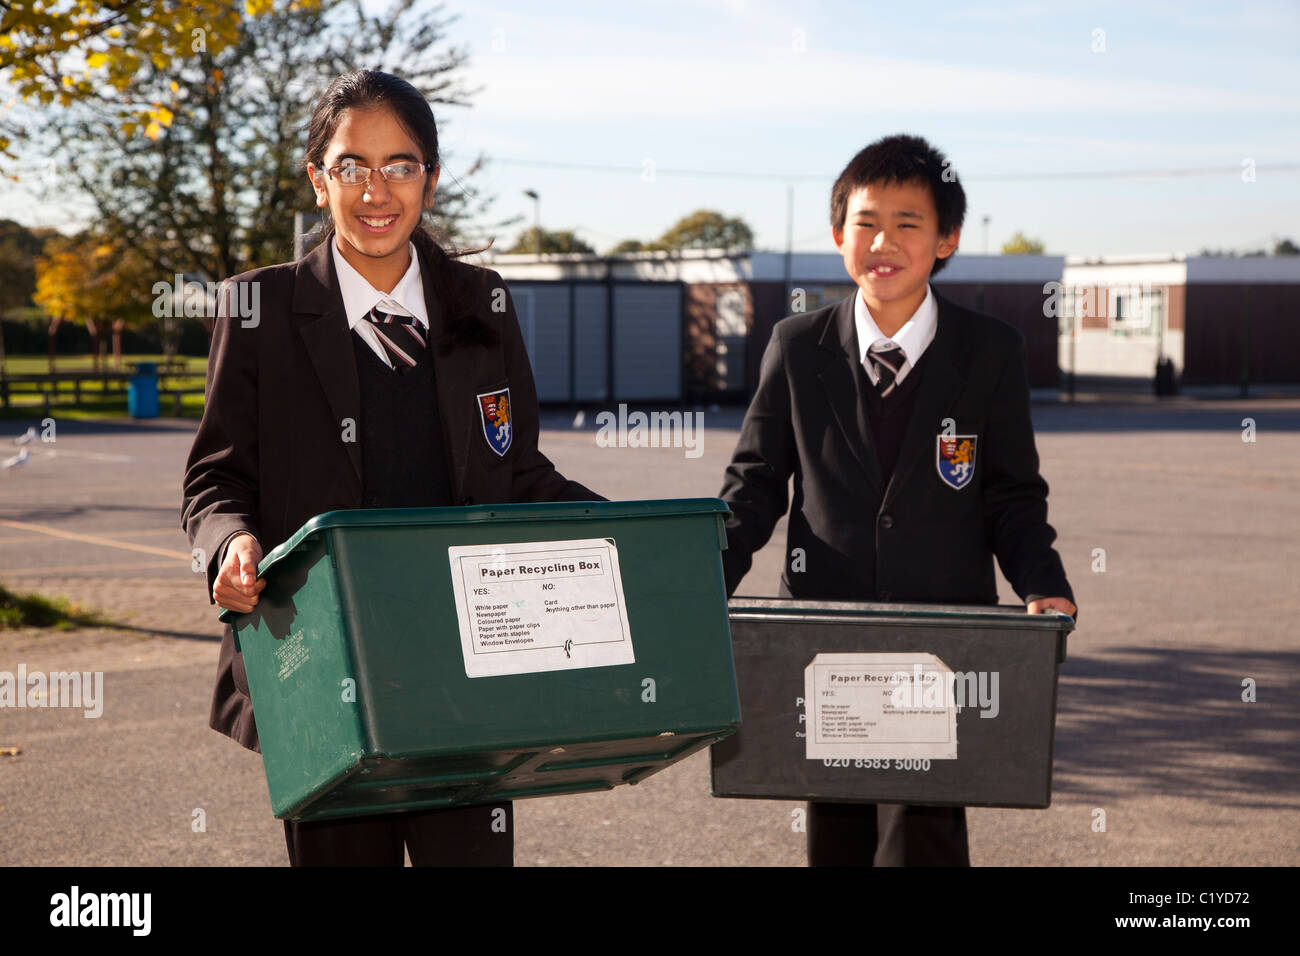 schoolchildren "school children" recycling paper Stock Photo